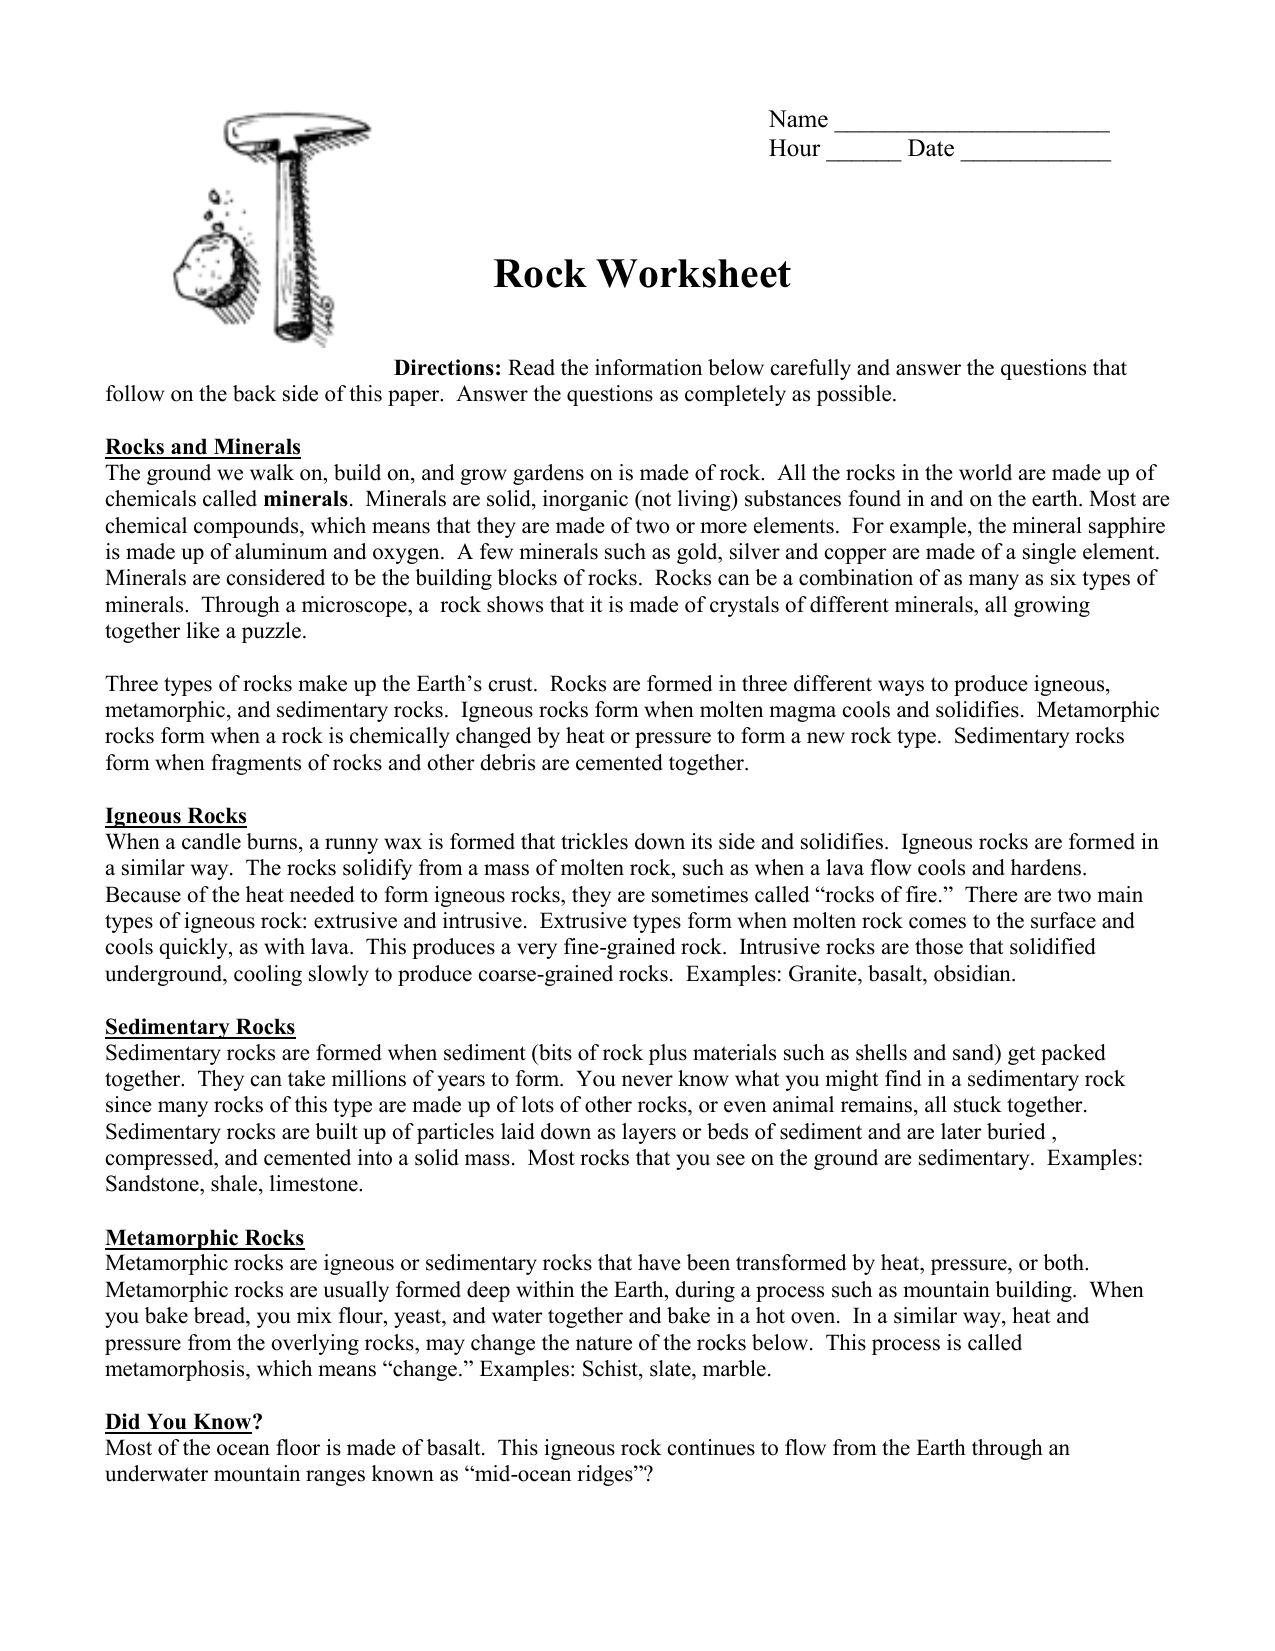 rock worksheet Intended For Types Of Rock Worksheet